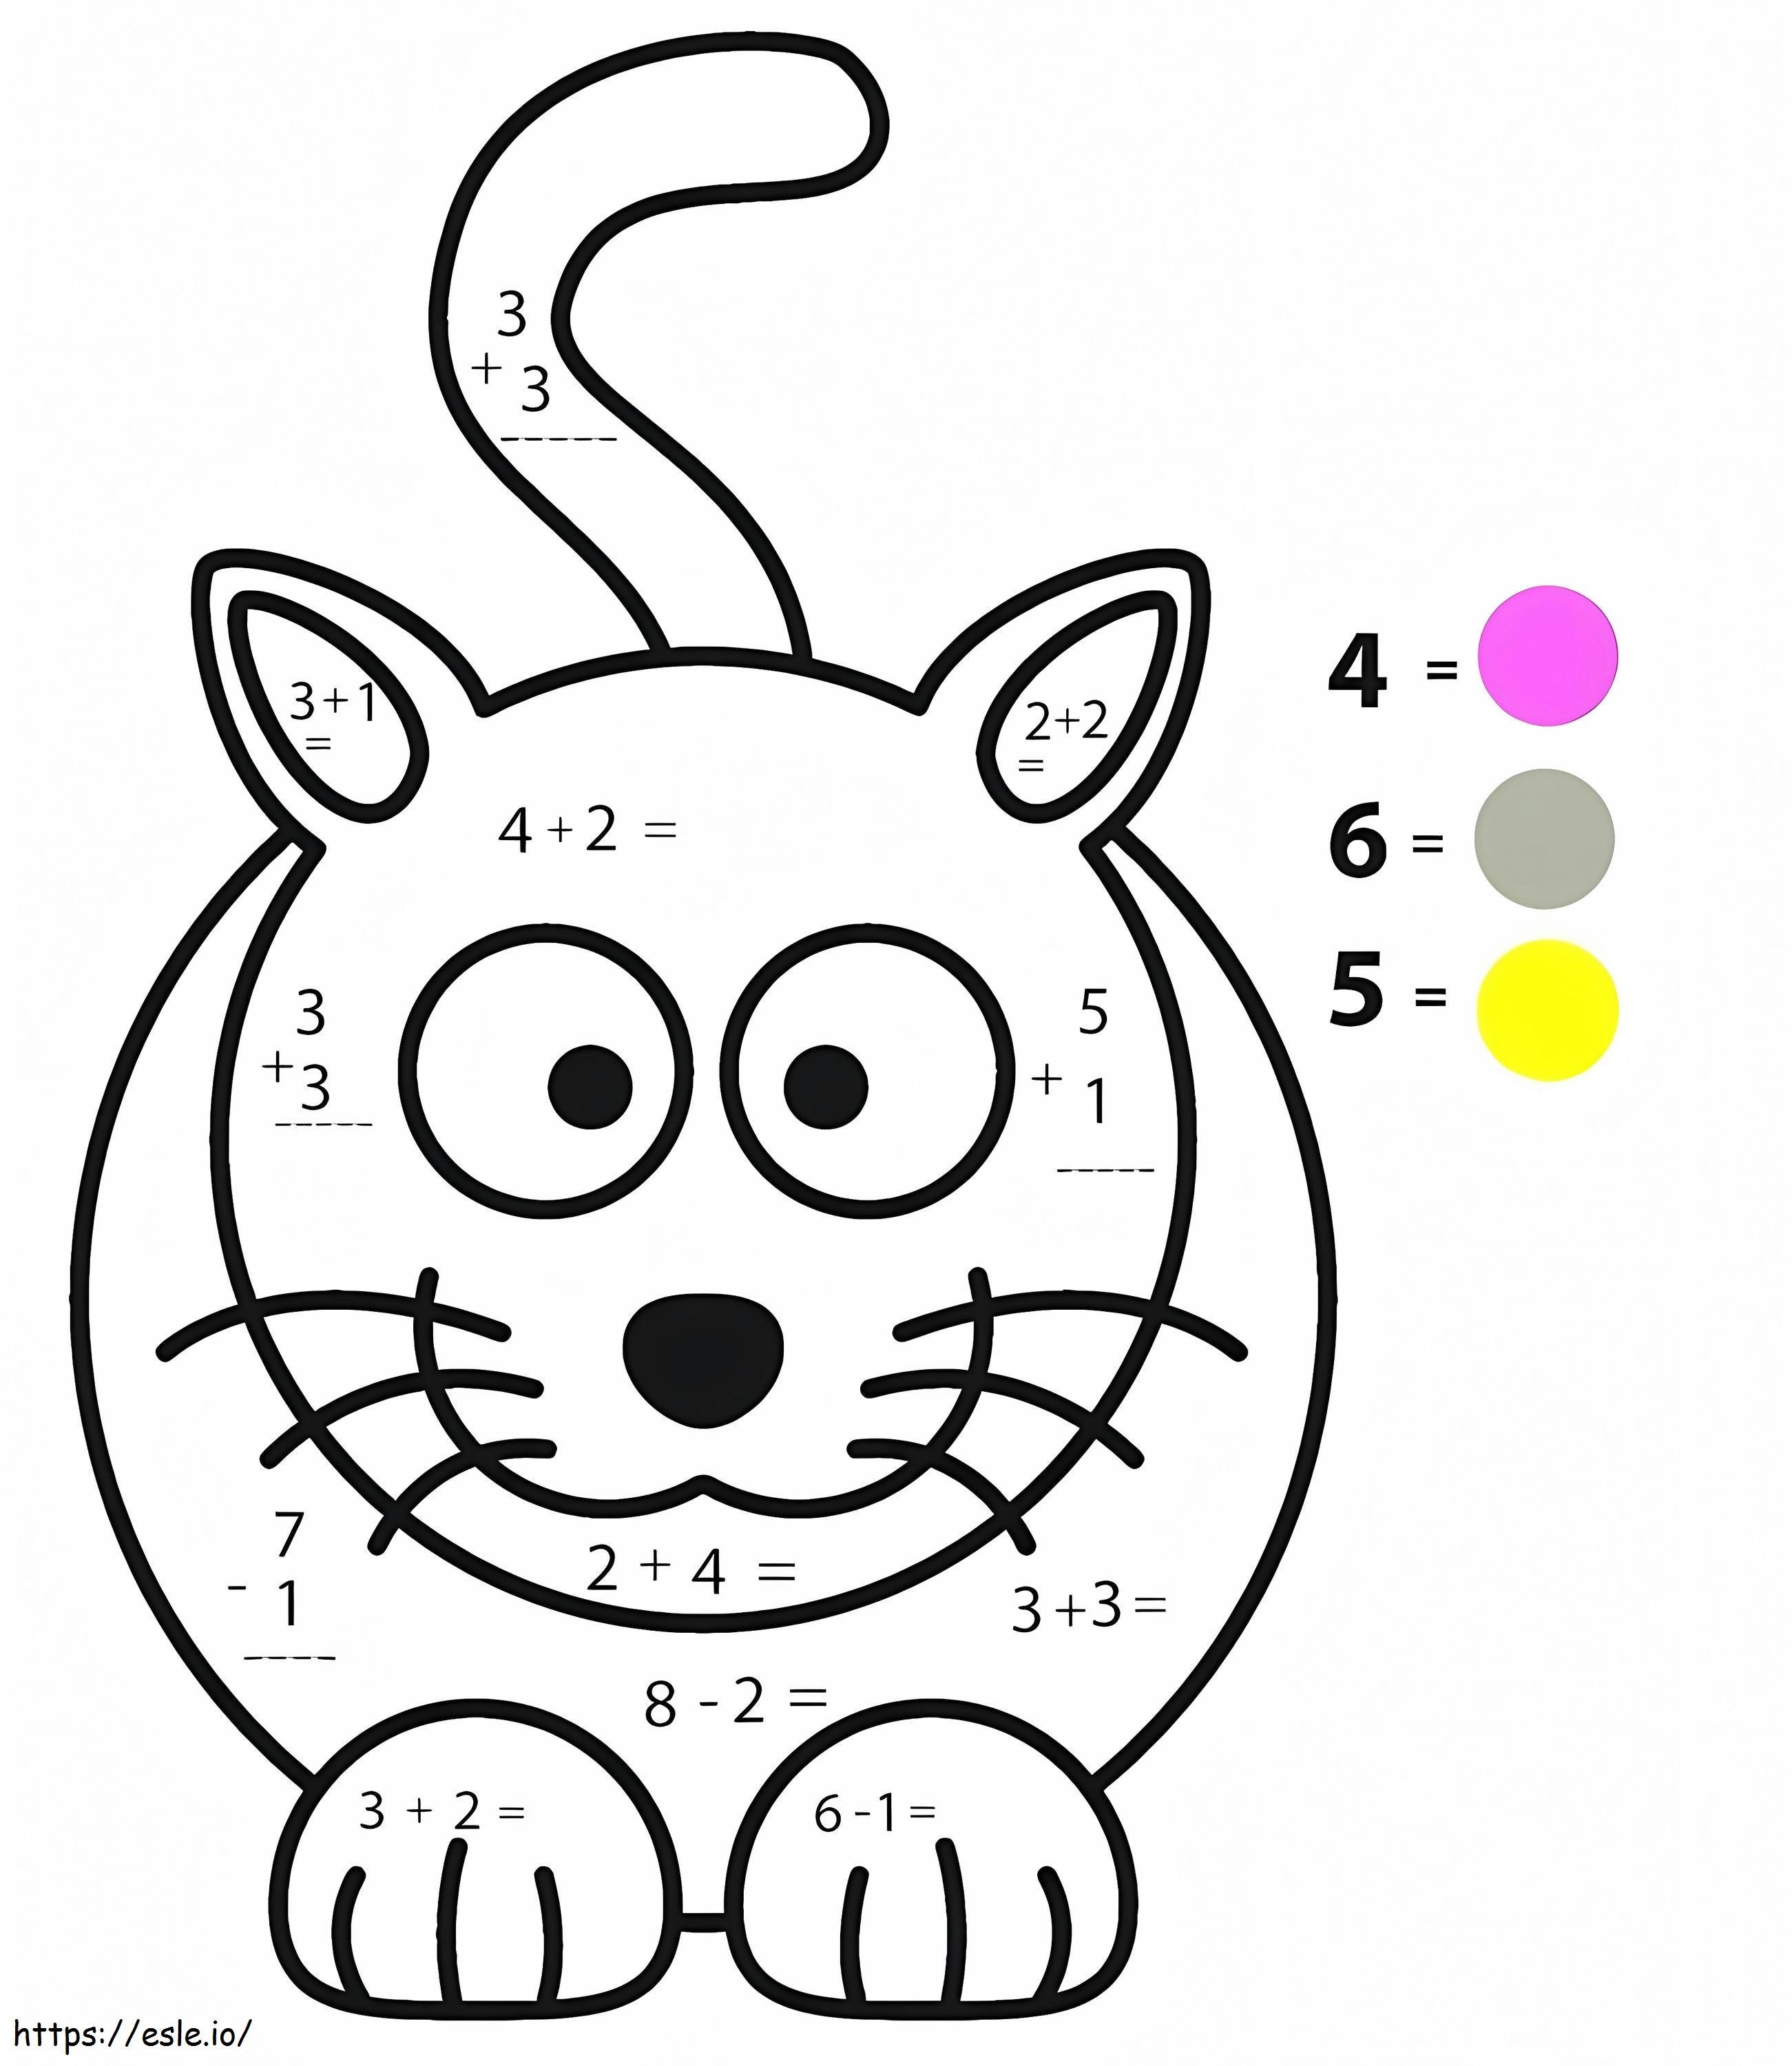 Karta pracy z matematyki dla kotów kolorowanka